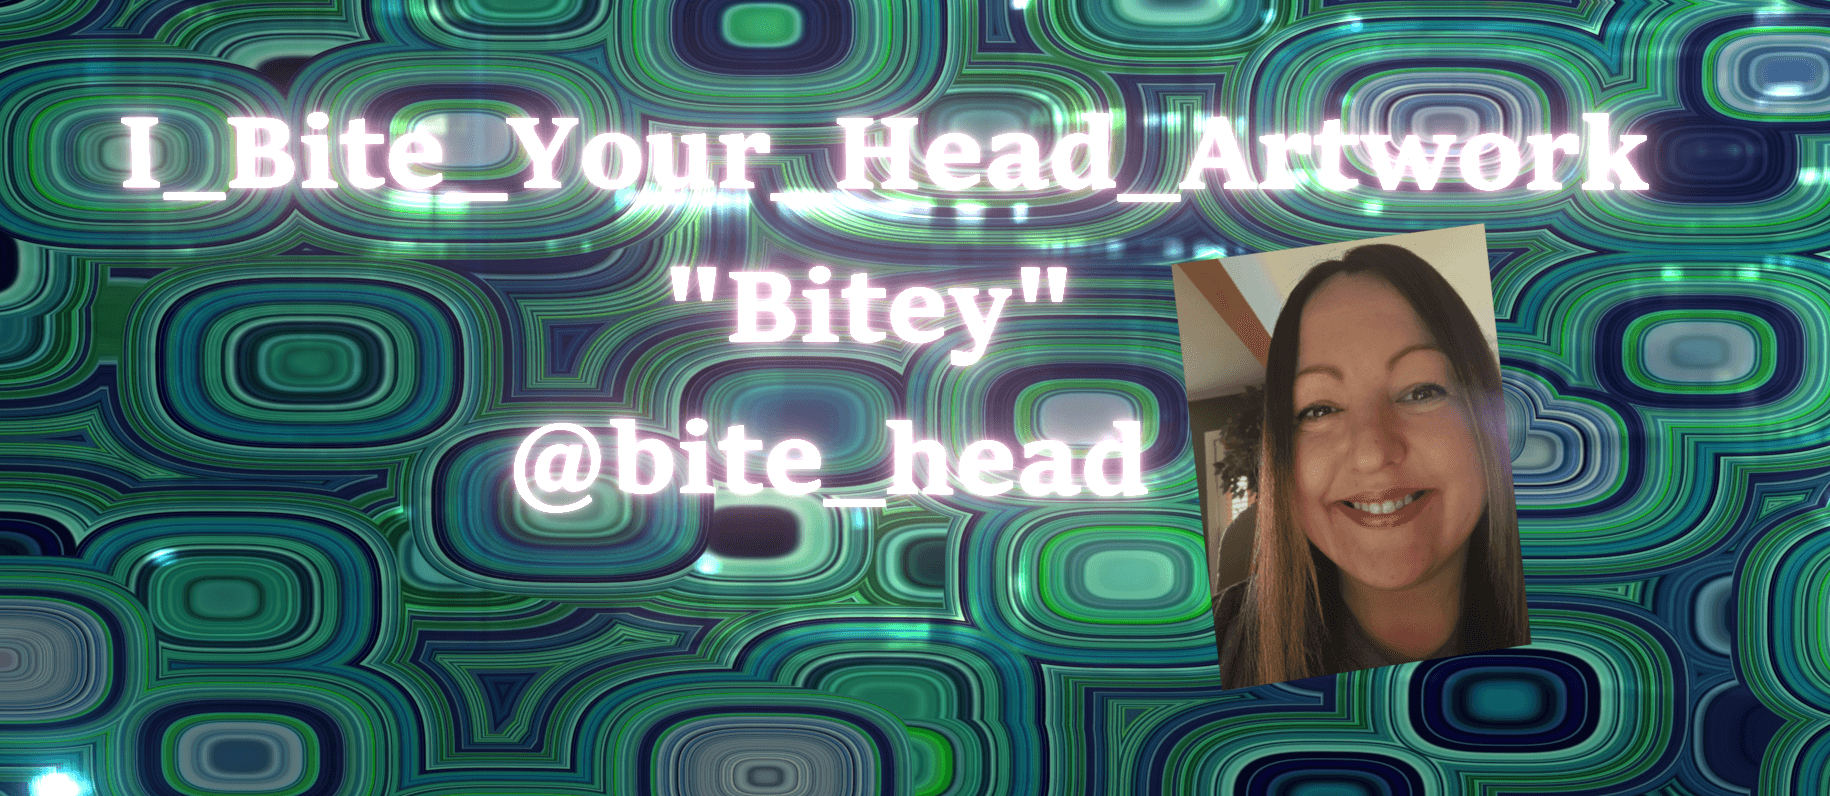 I_Bite_Your_Head_Artwork banner